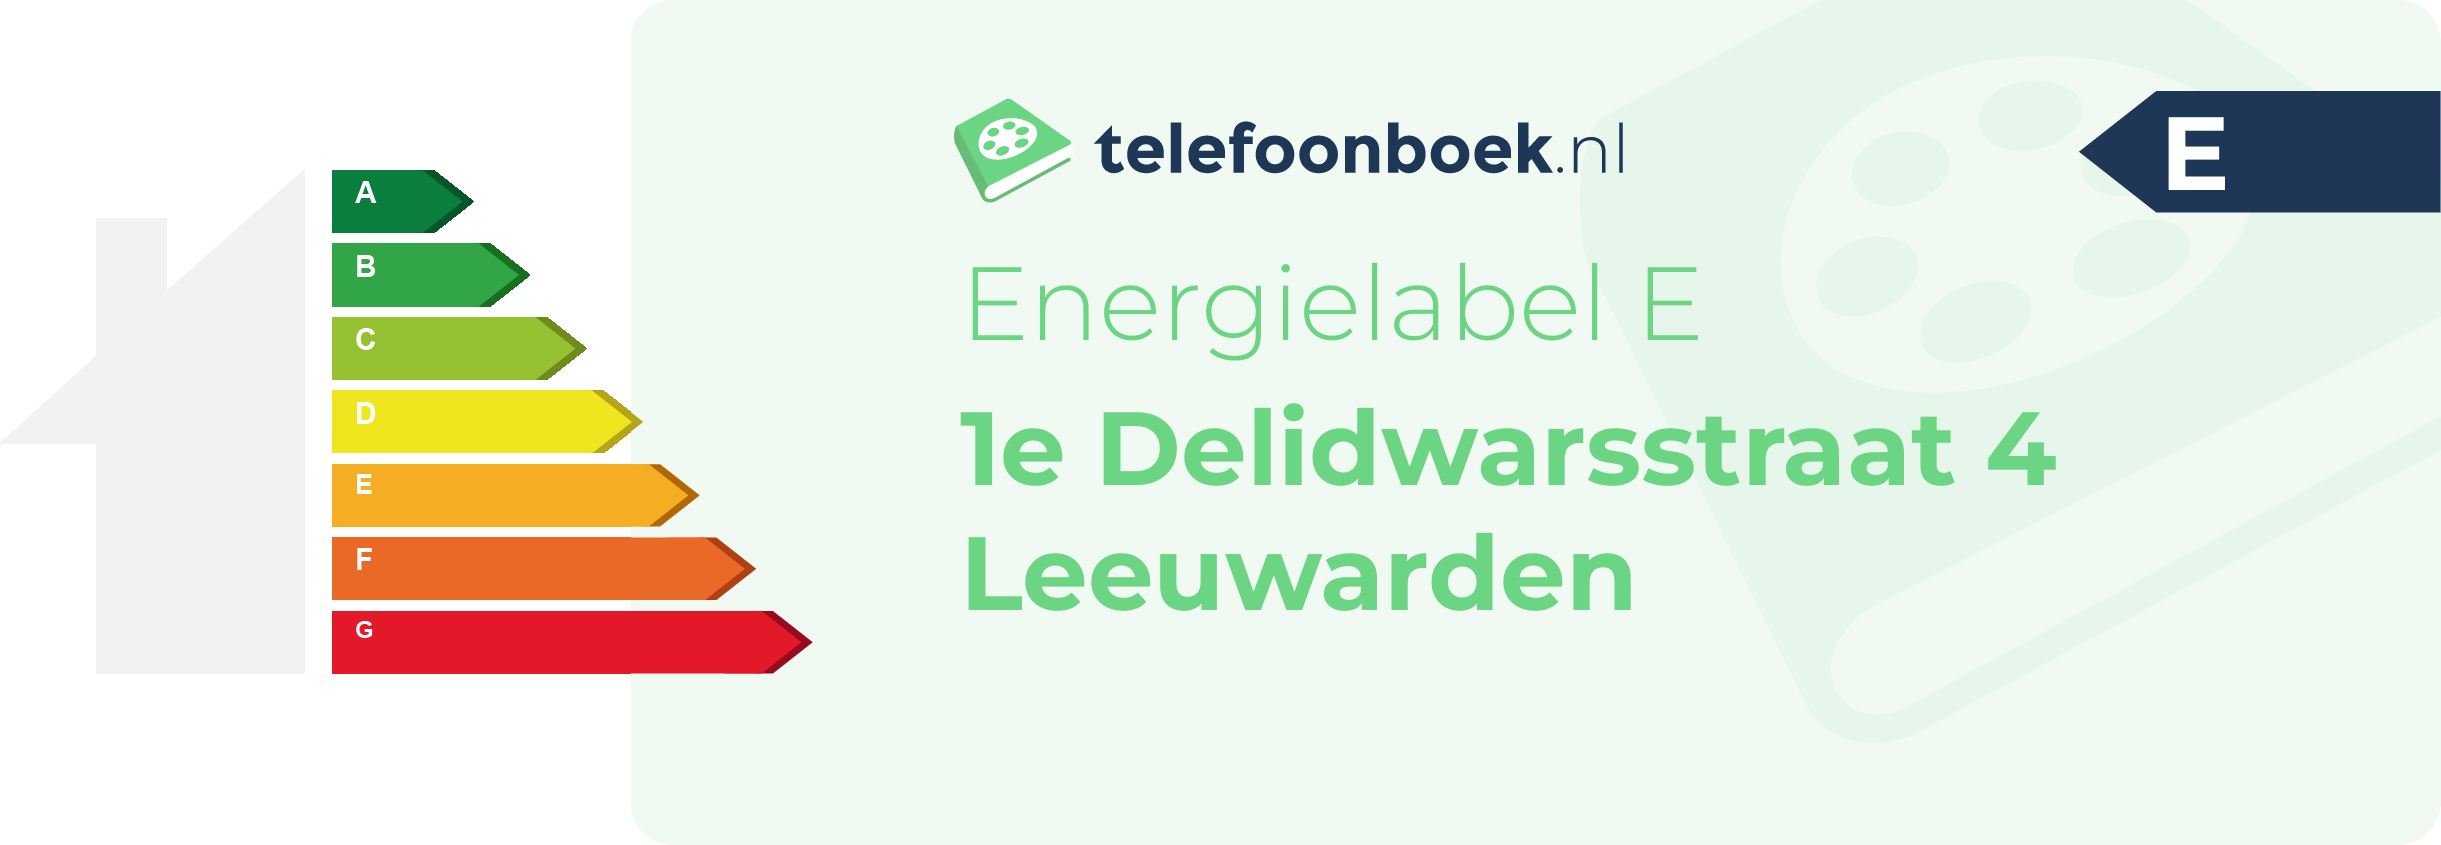 Energielabel 1e Delidwarsstraat 4 Leeuwarden